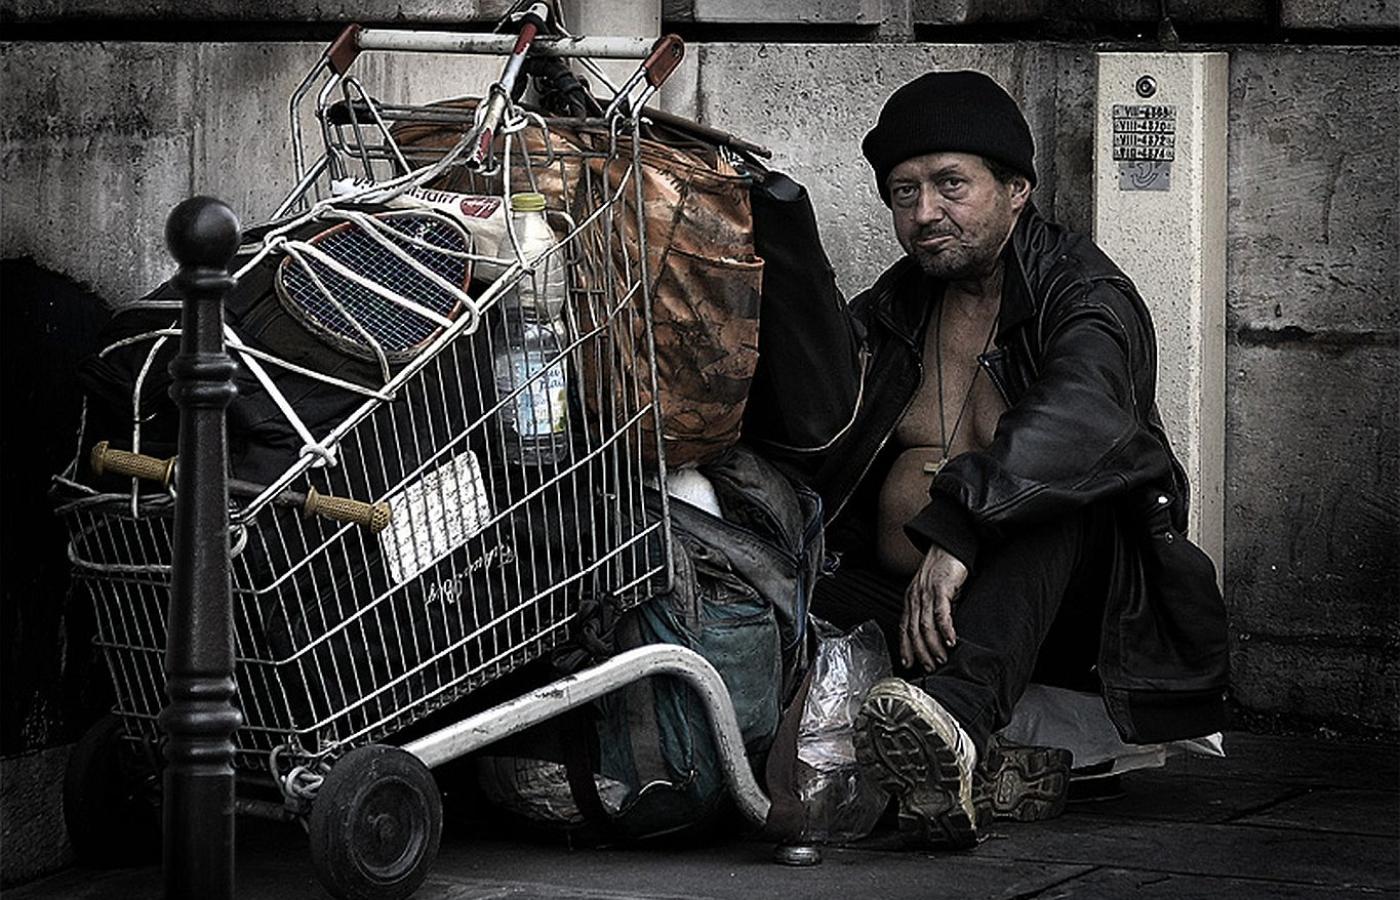 Bezdomny w Paryżu. Bezdomnych, narkomanów i żebraków powszechnie postrzega się jako ludzi upośledzonych.